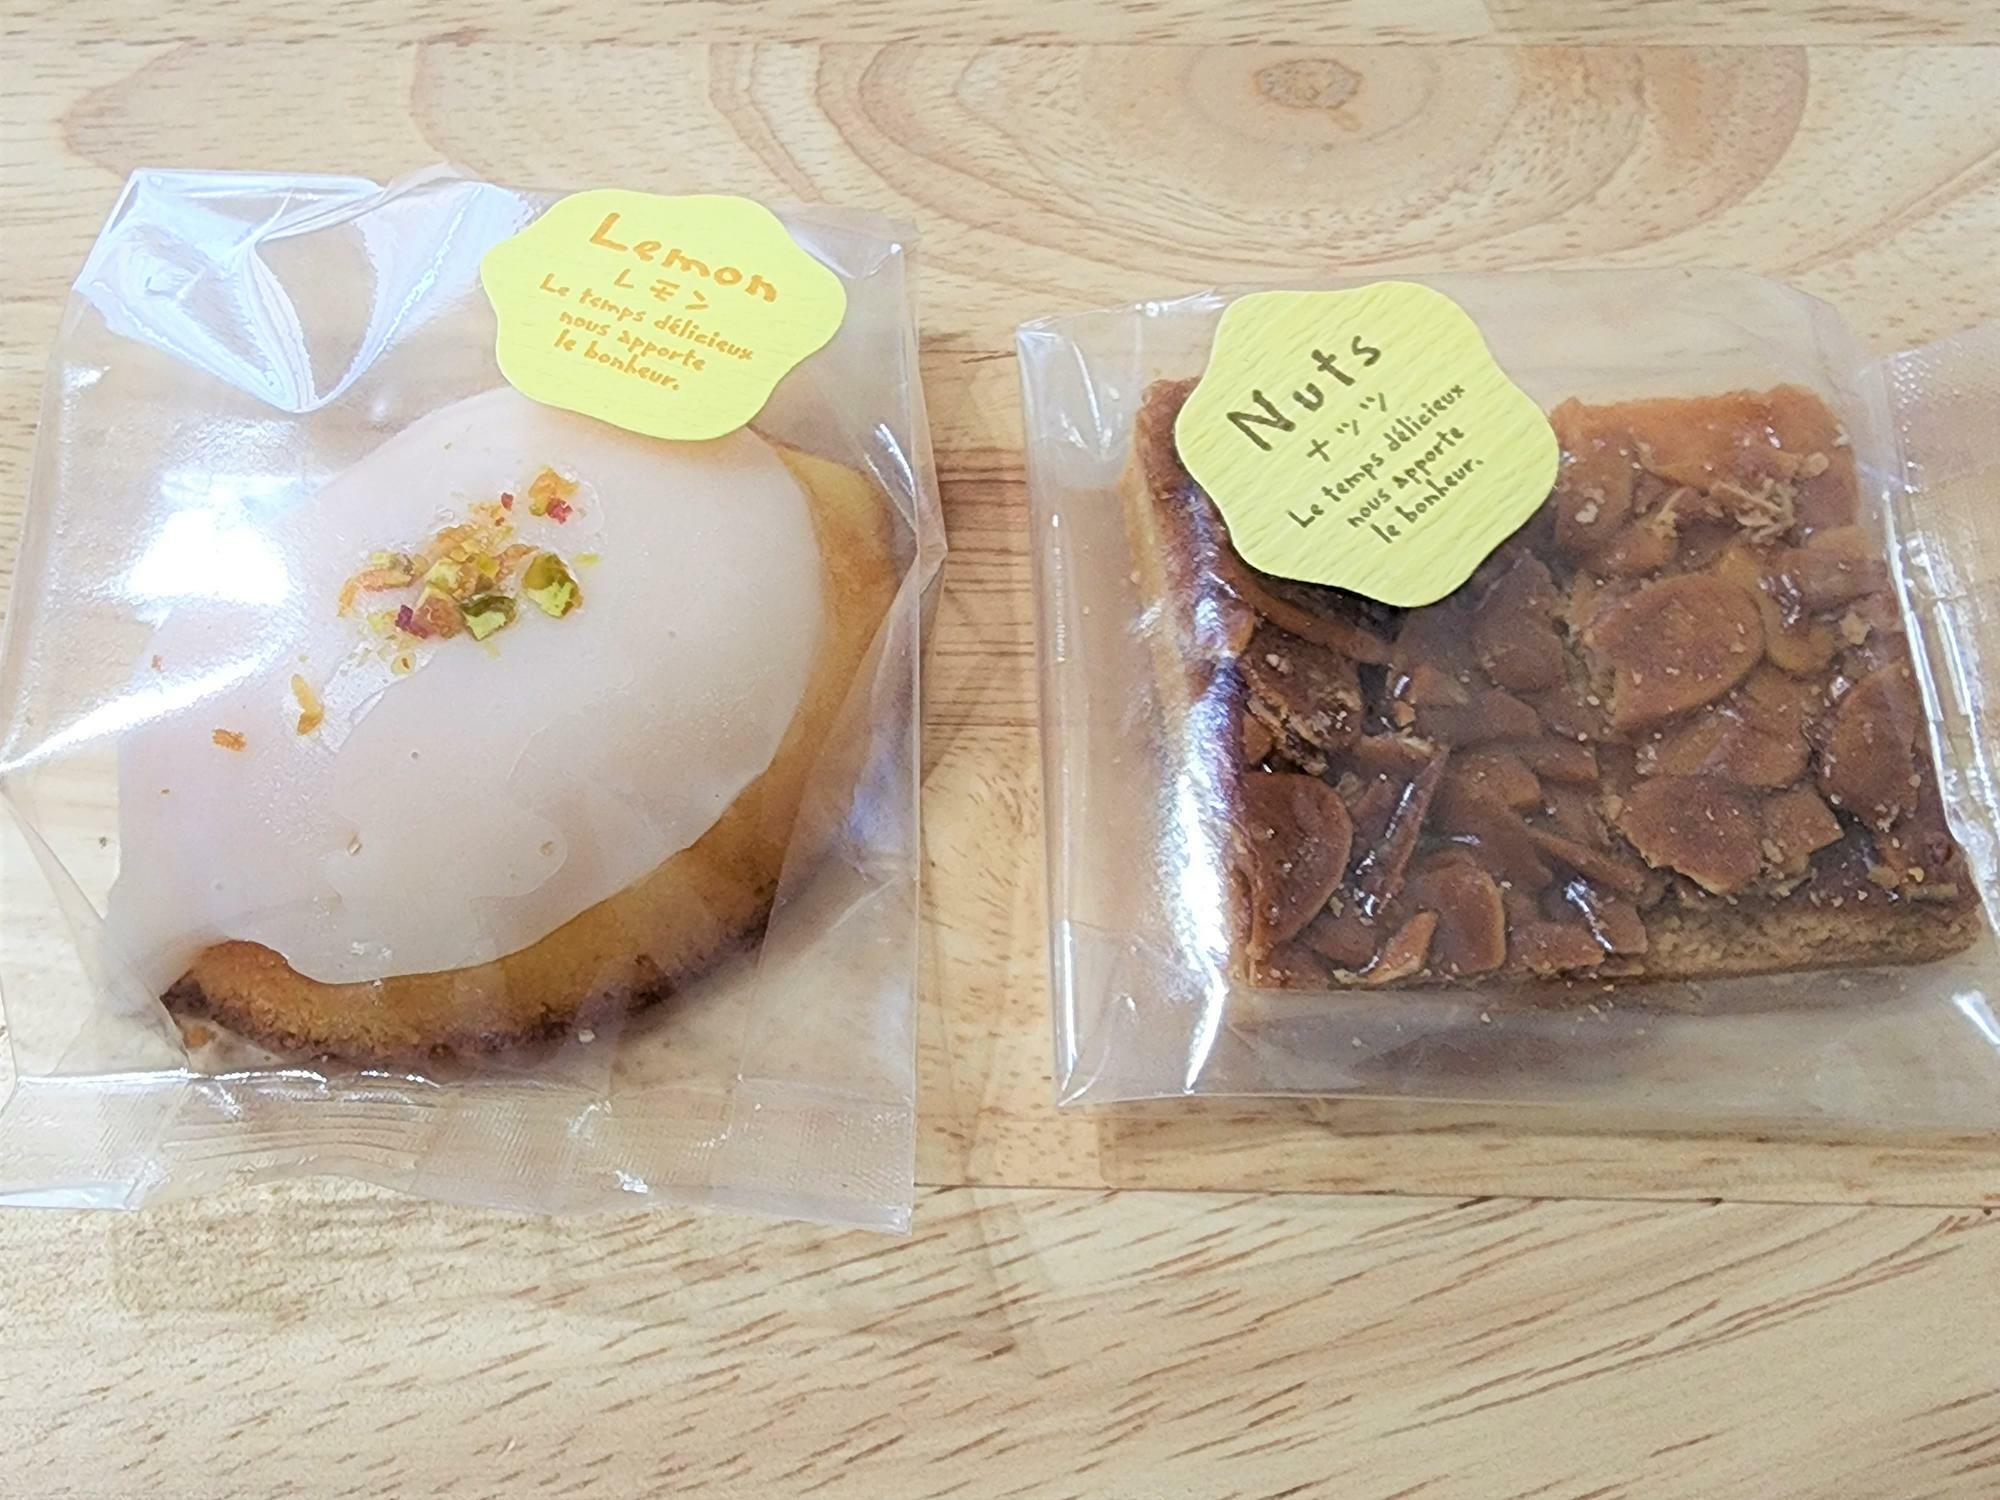 「ちろのおかし」のお菓子。左が「レモンケーキ」で、右は「フロランタン」。